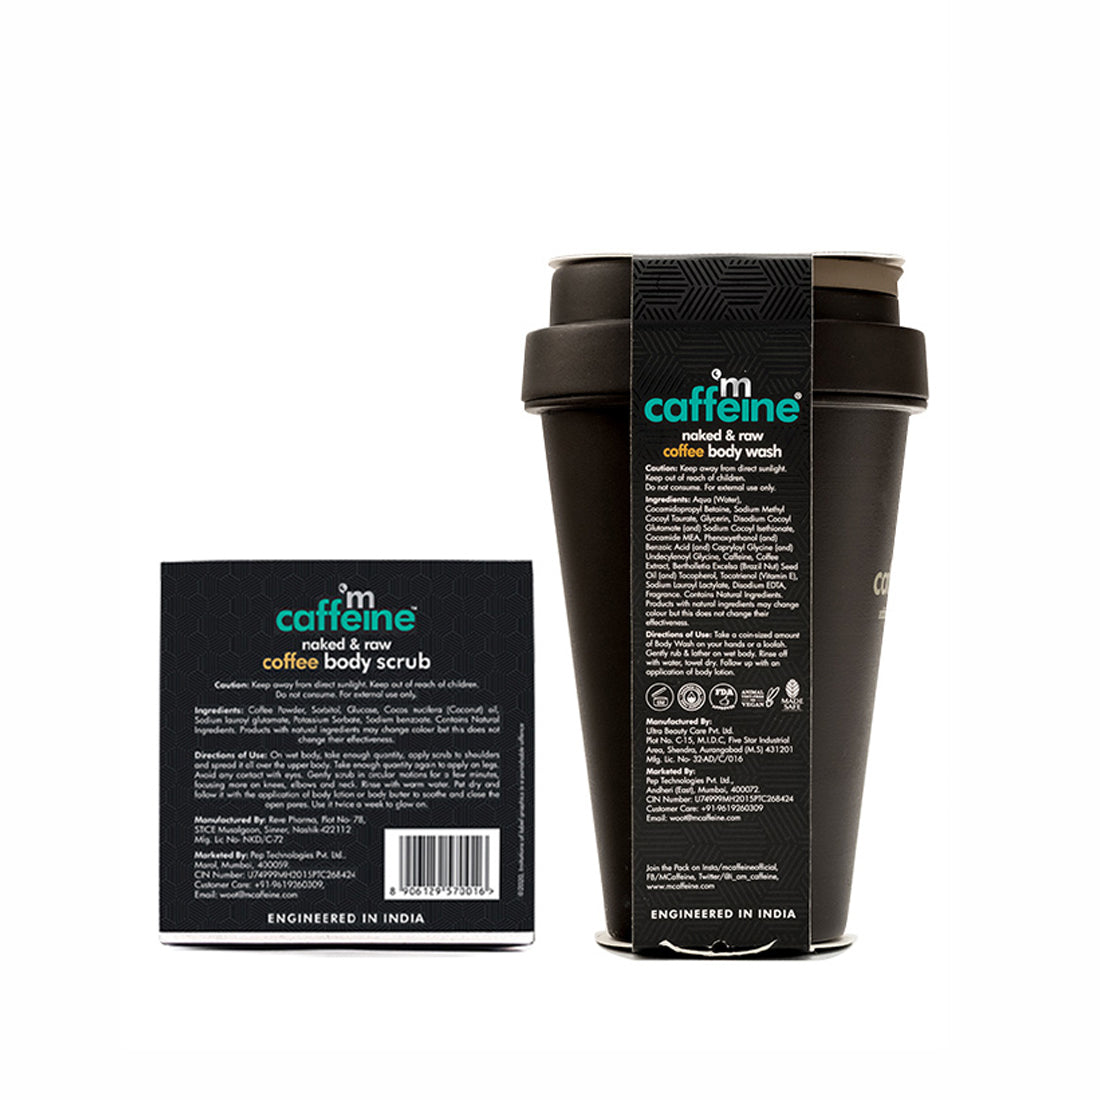 mCaffeine Coffee Body Exfoliation Kit